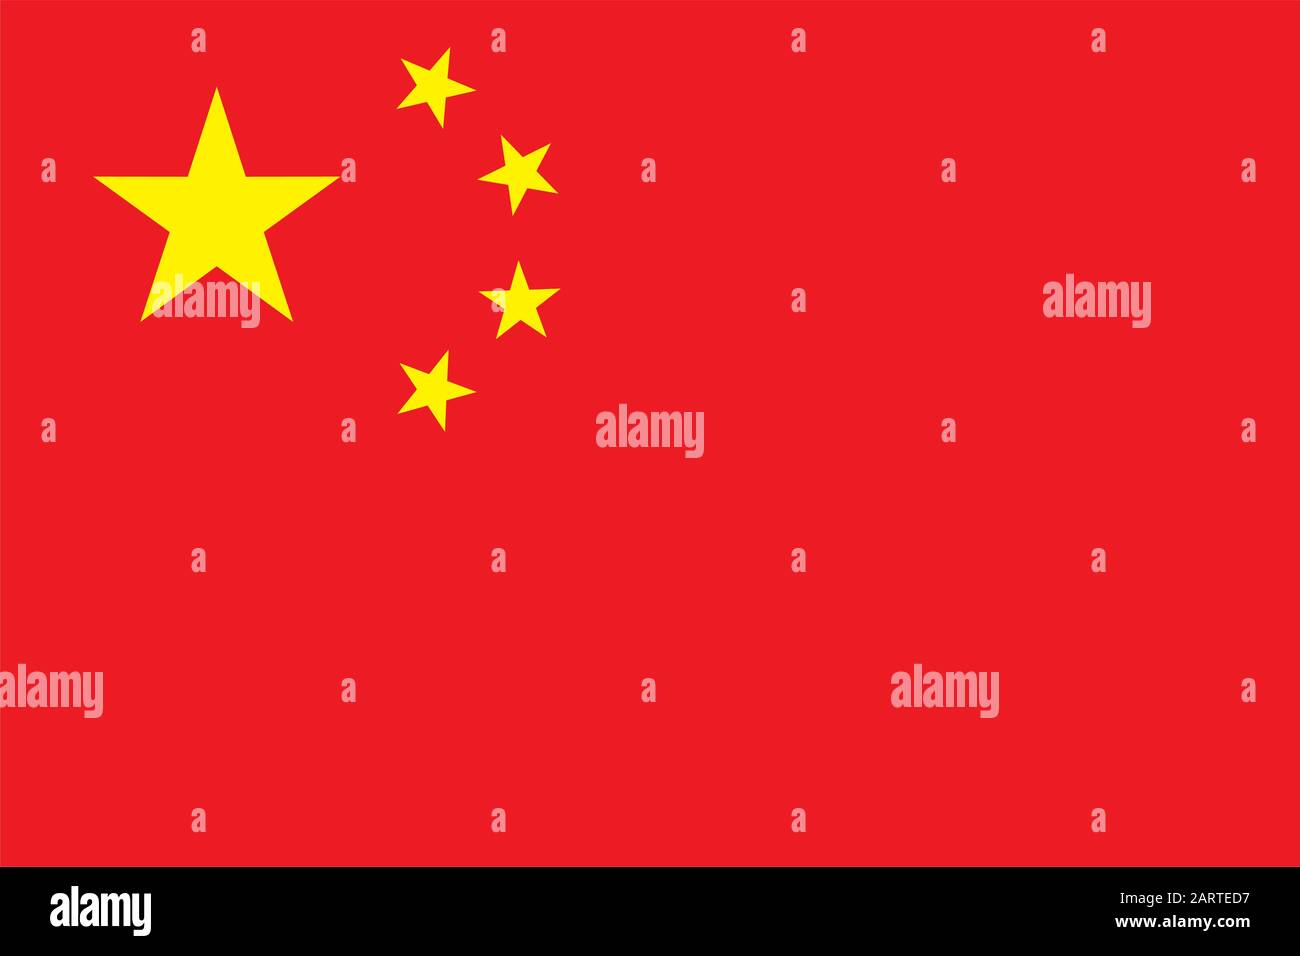 Nationalflaggen der Volksrepublik China. Das rote Banner im Kanton mit fünf goldenen Sternen. Korrekte offizielle Farben und Proportionen. V Stock Vektor